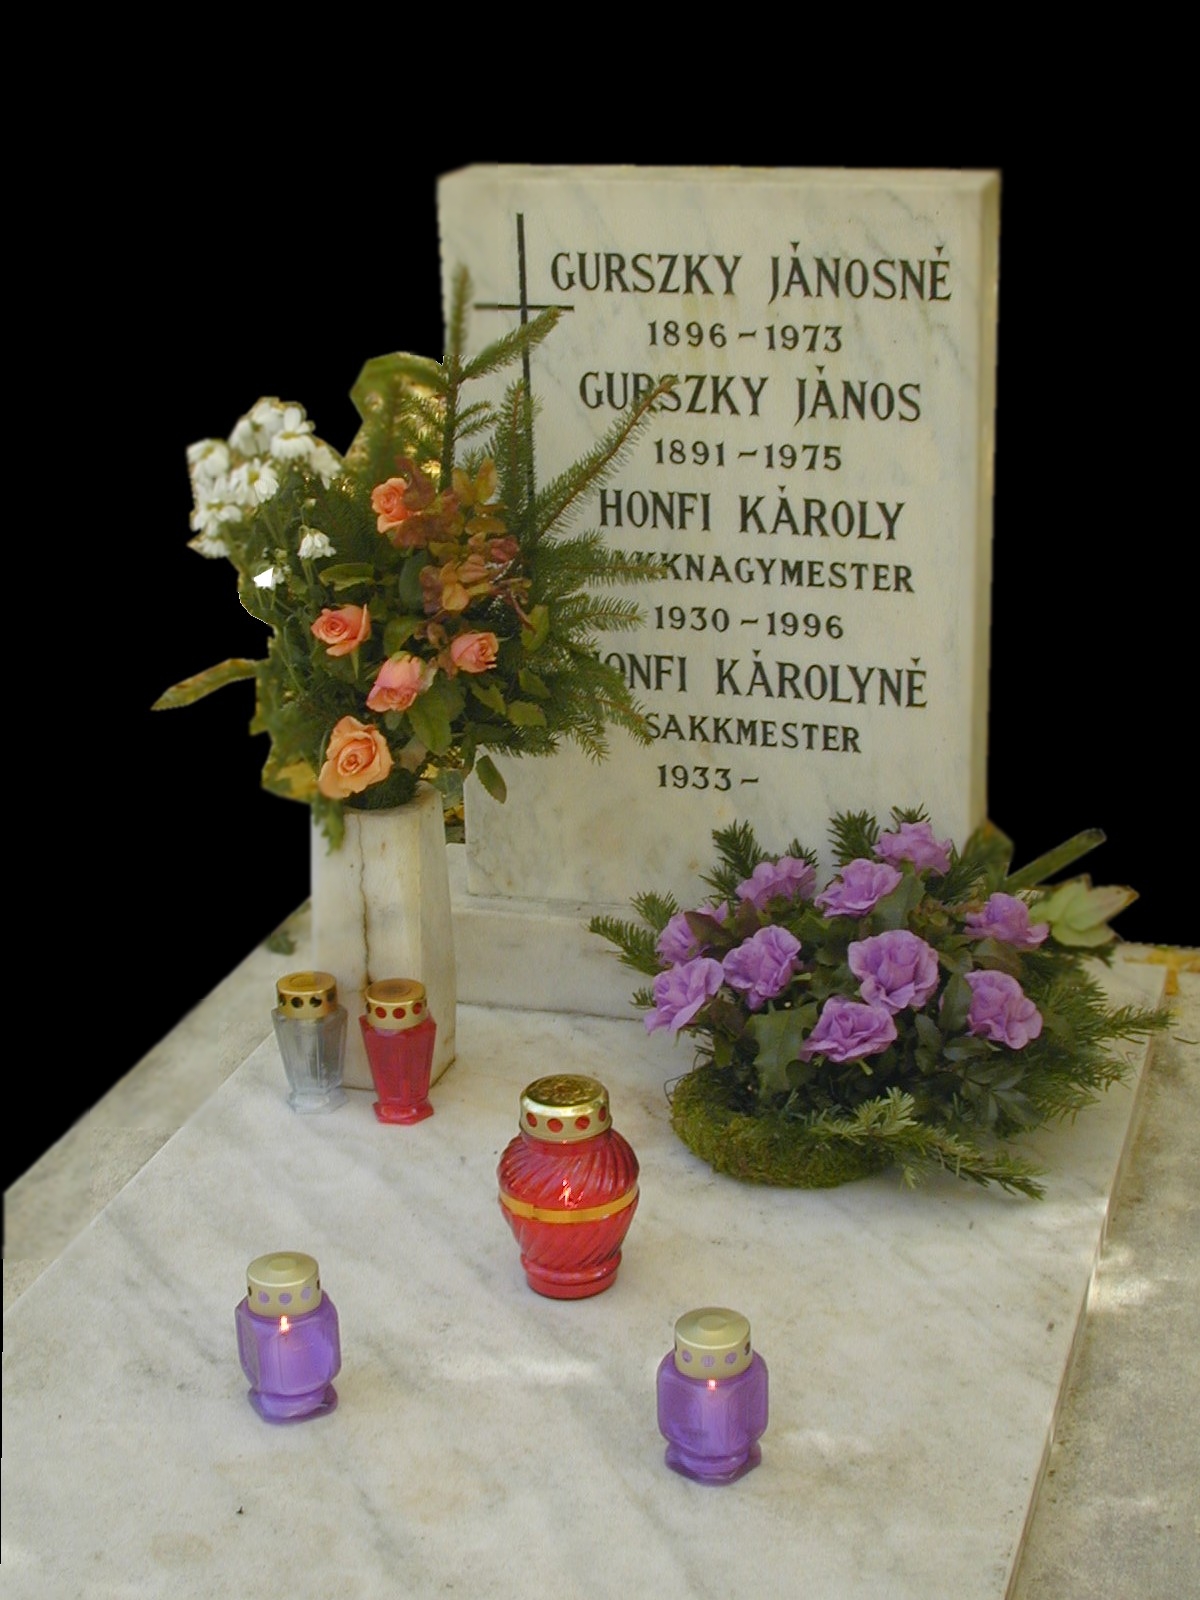 Honfi Károly családi sírja a budapesti Új Köztemetőben